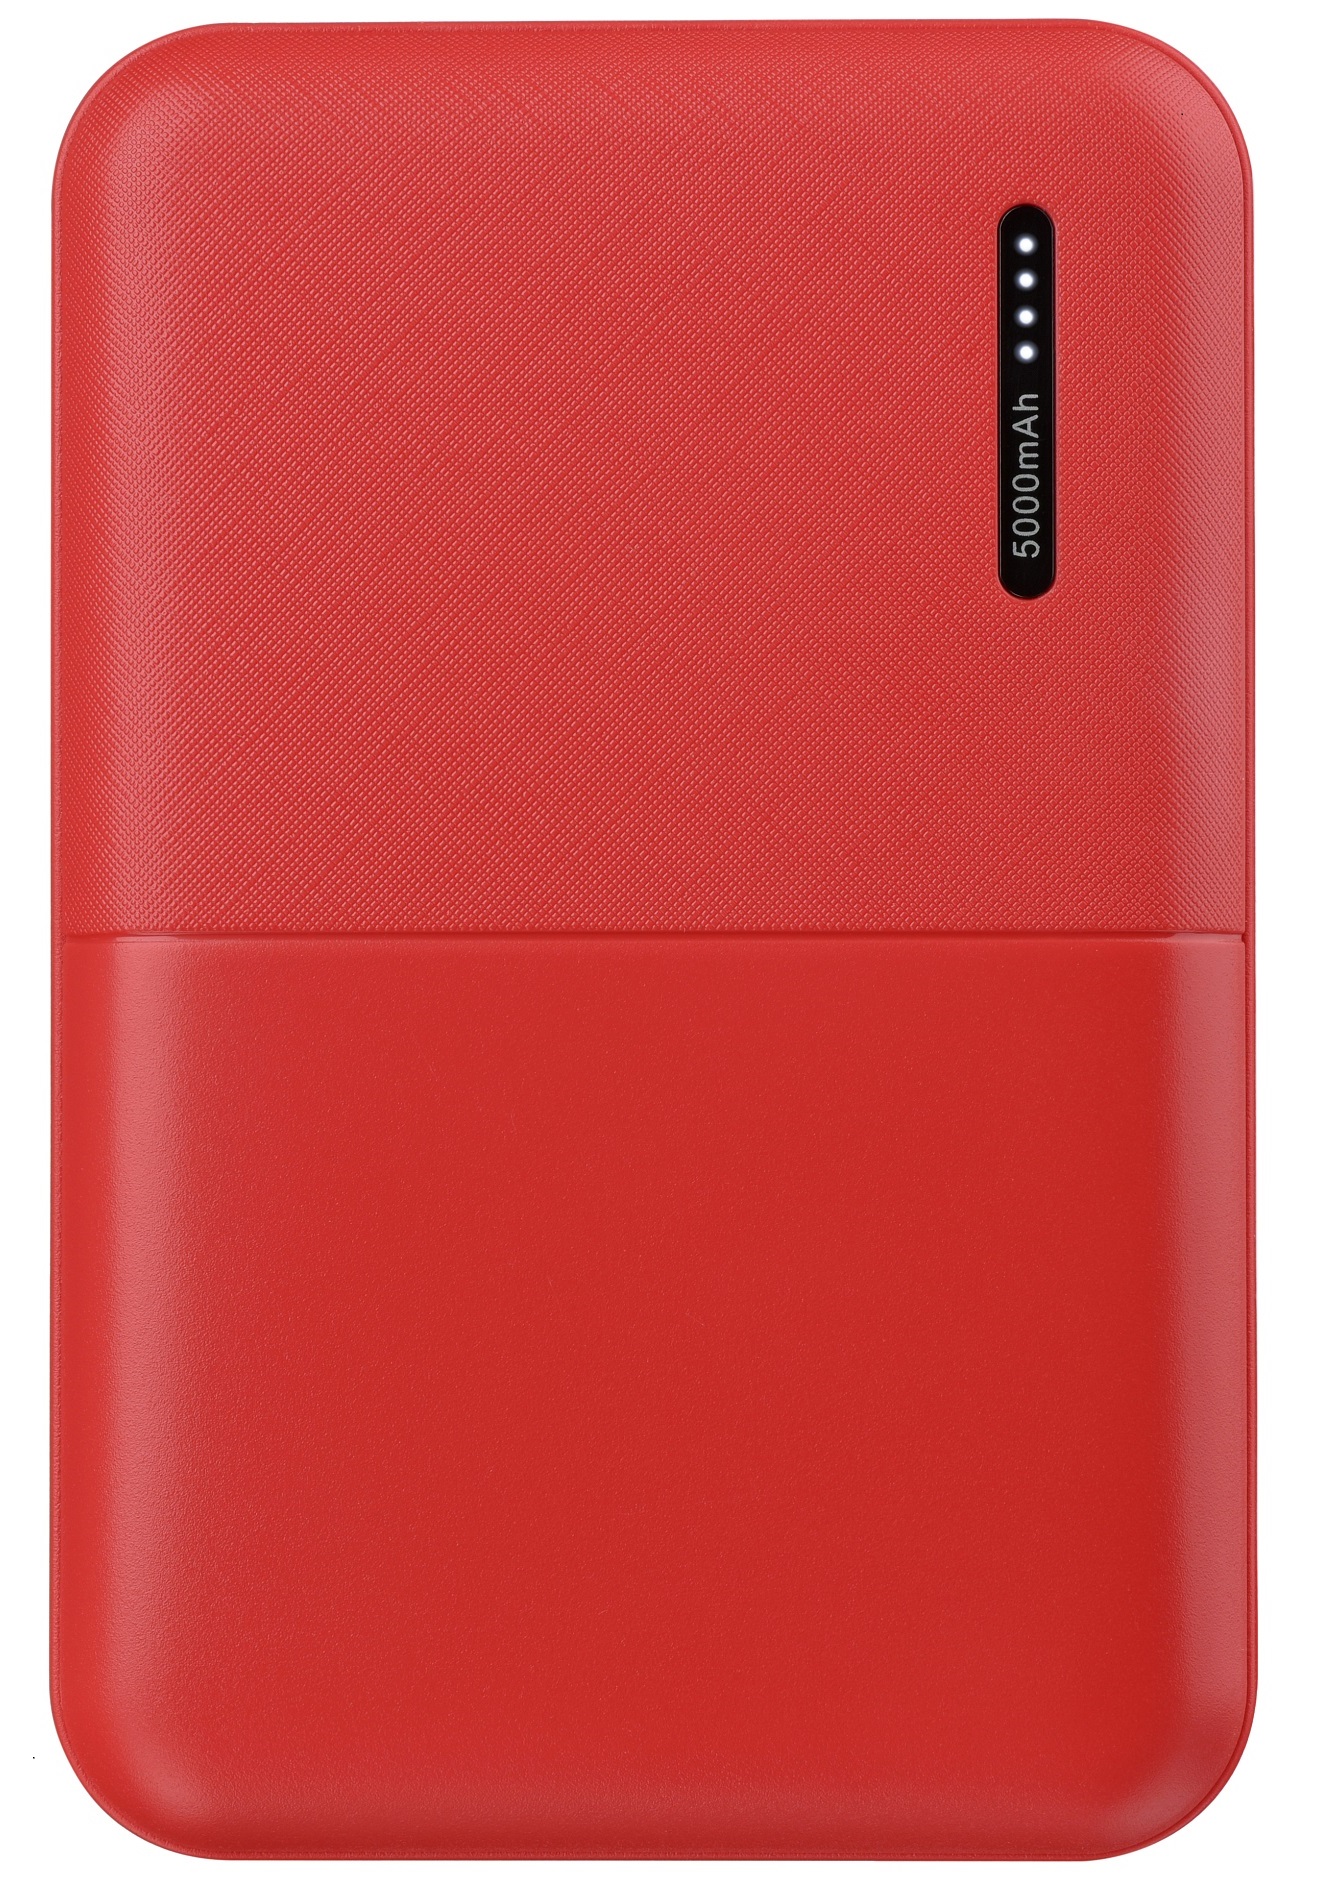 Универсальная мобильная батарея 2Е 5000mAh Red (2E-PB500B-RED) в Киеве